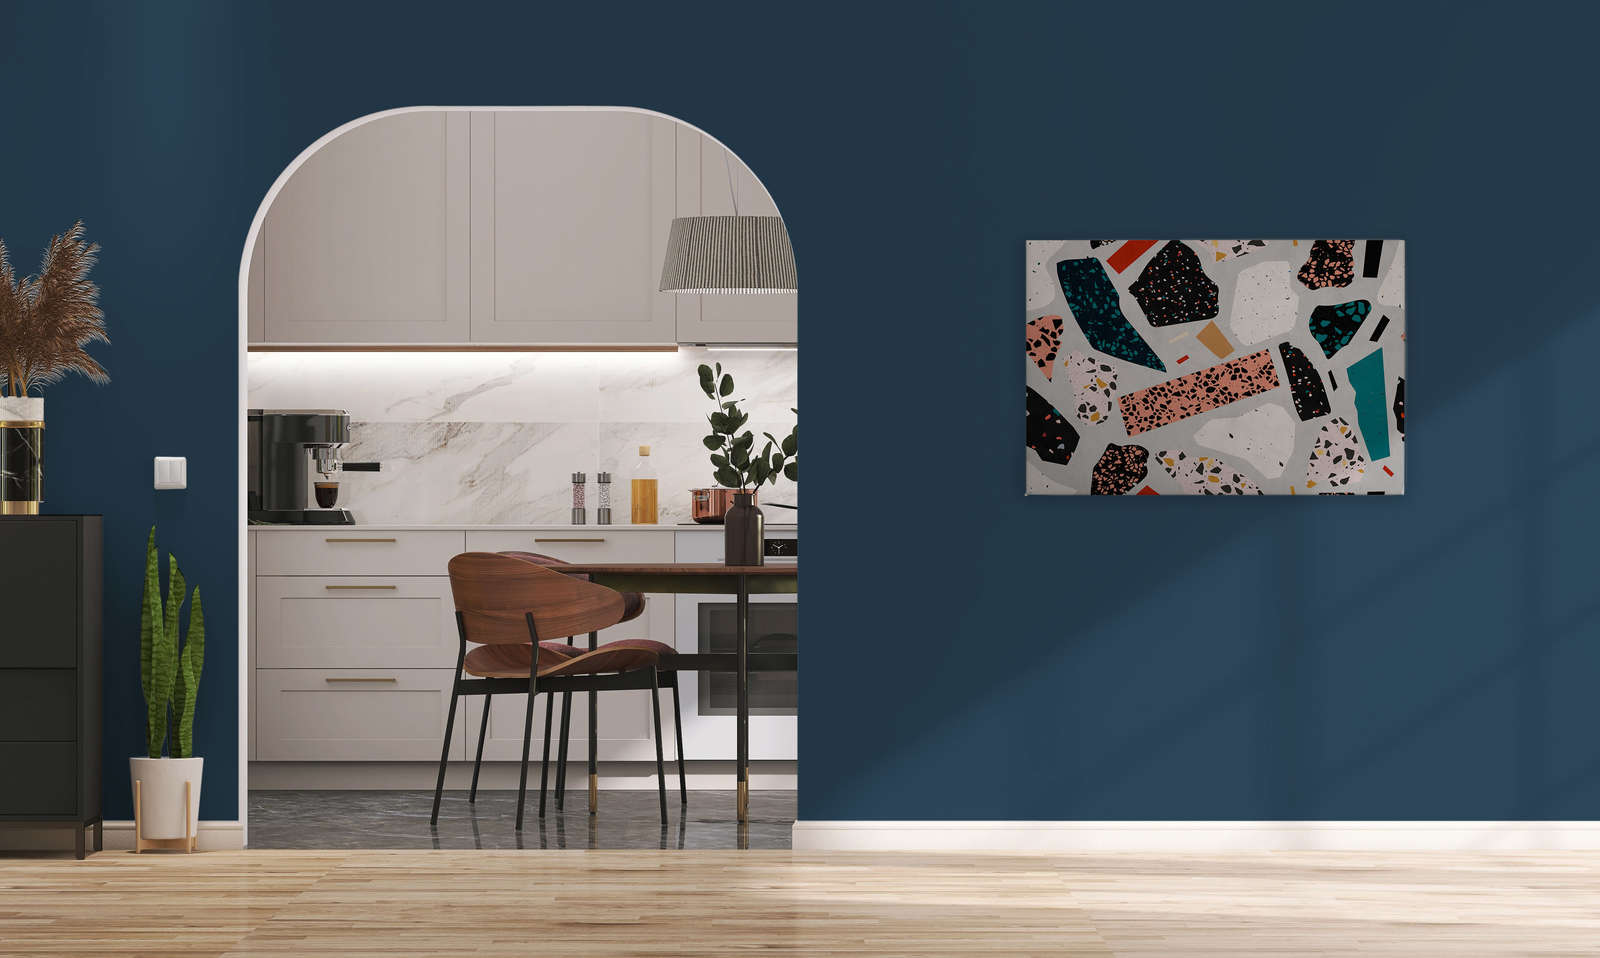             Terrazzo 1 - Canvas schilderij met Terrazzopatroon, steenlook in vloeipapierstructuur - 0.90 m x 0.60 m
        